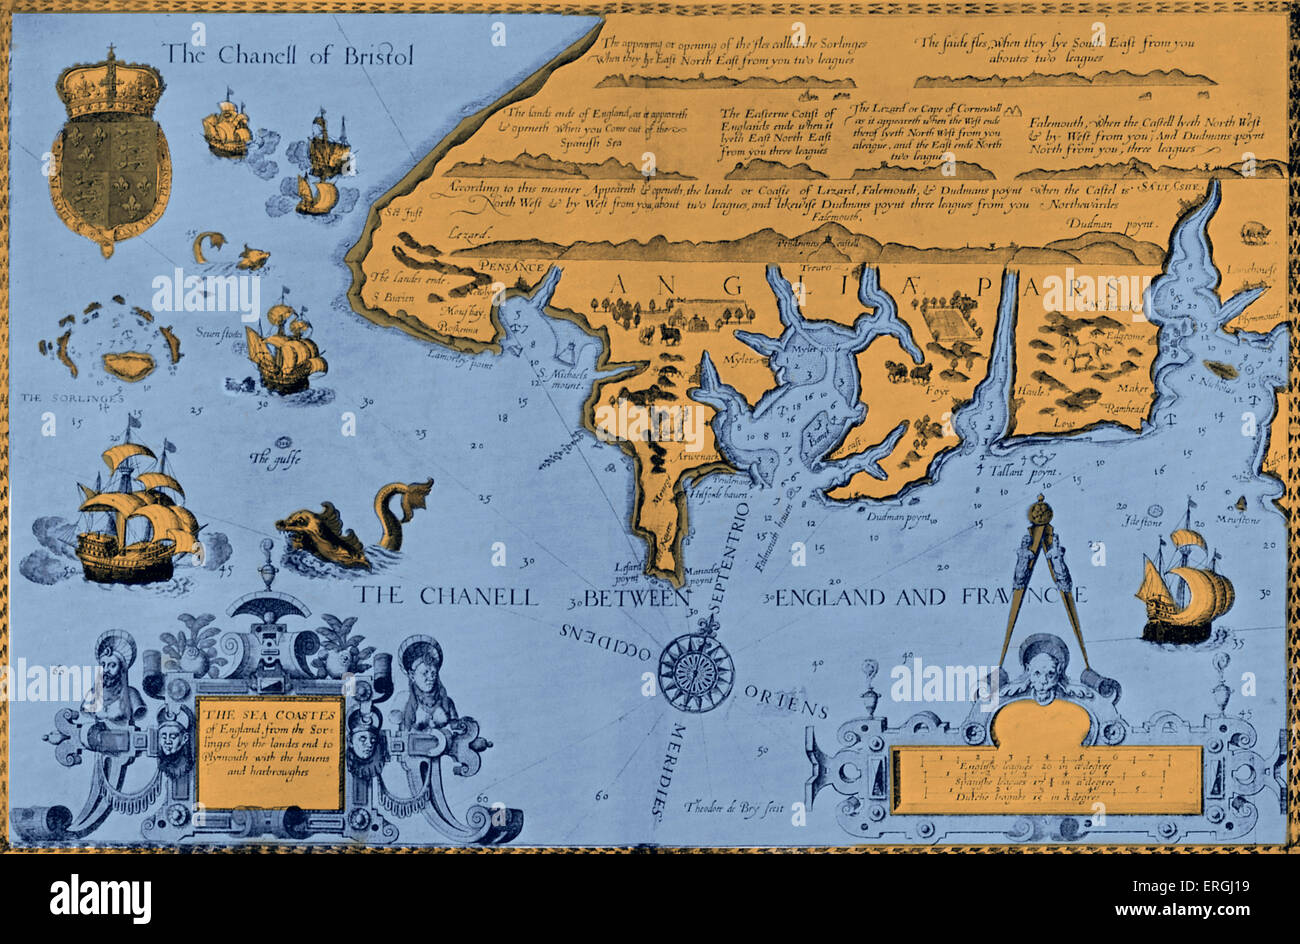 Mappa del mare sulle coste dell'Inghilterra dalla Sorlinges (Isole Scilly) in 'Il Mariner's Mirror' da Wagenar - Pagina del titolo. Pubblicato Foto Stock